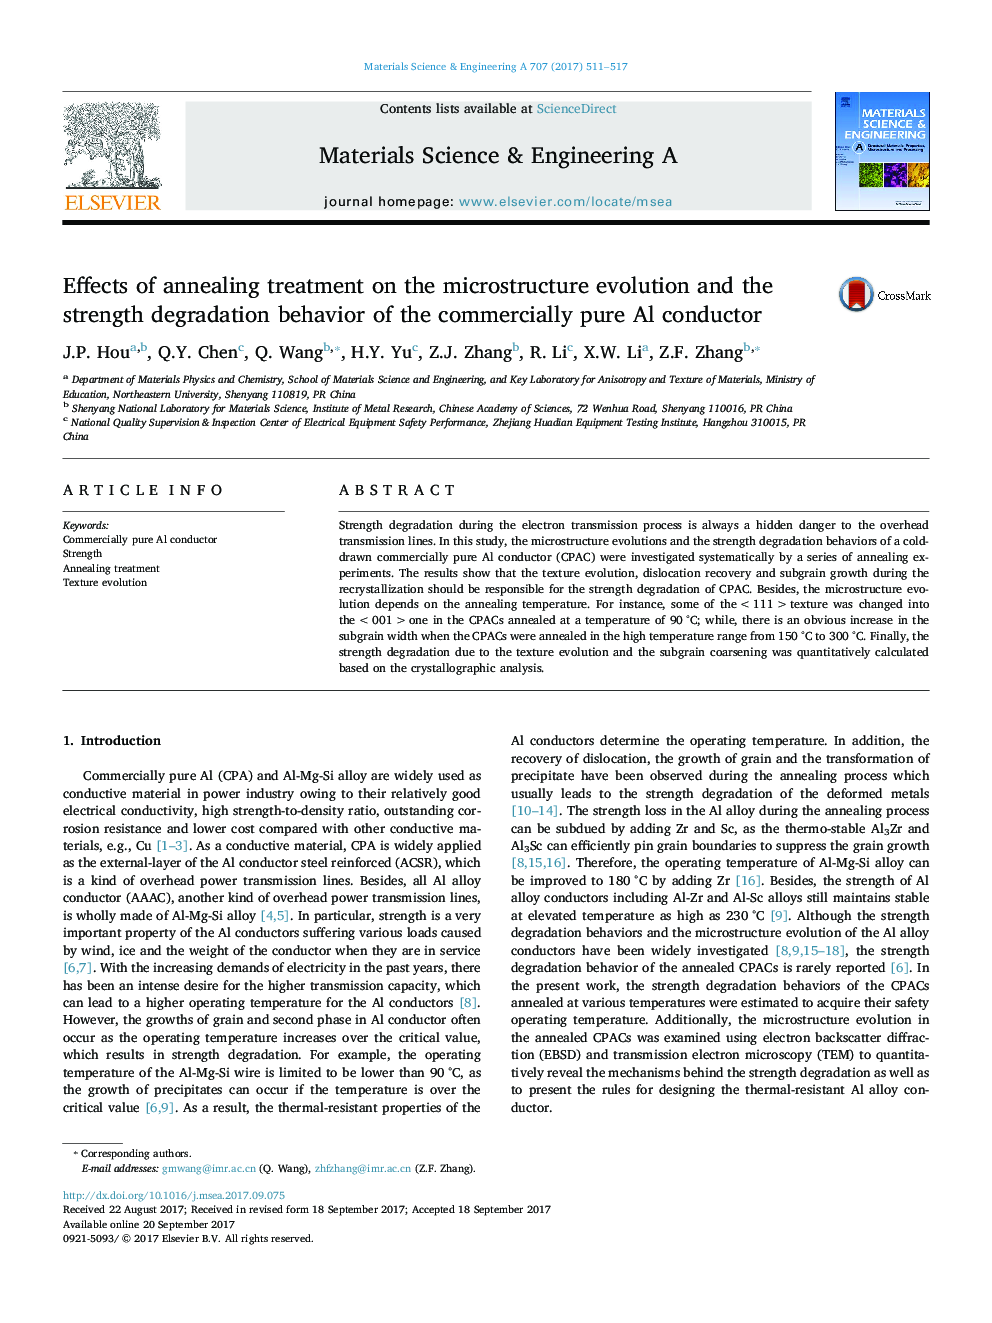 اثرات درمان خنک کننده بر تکامل میکروارگانیسم و ​​رفتار تخریب استحکام آلومینیومی آلومینیوم 